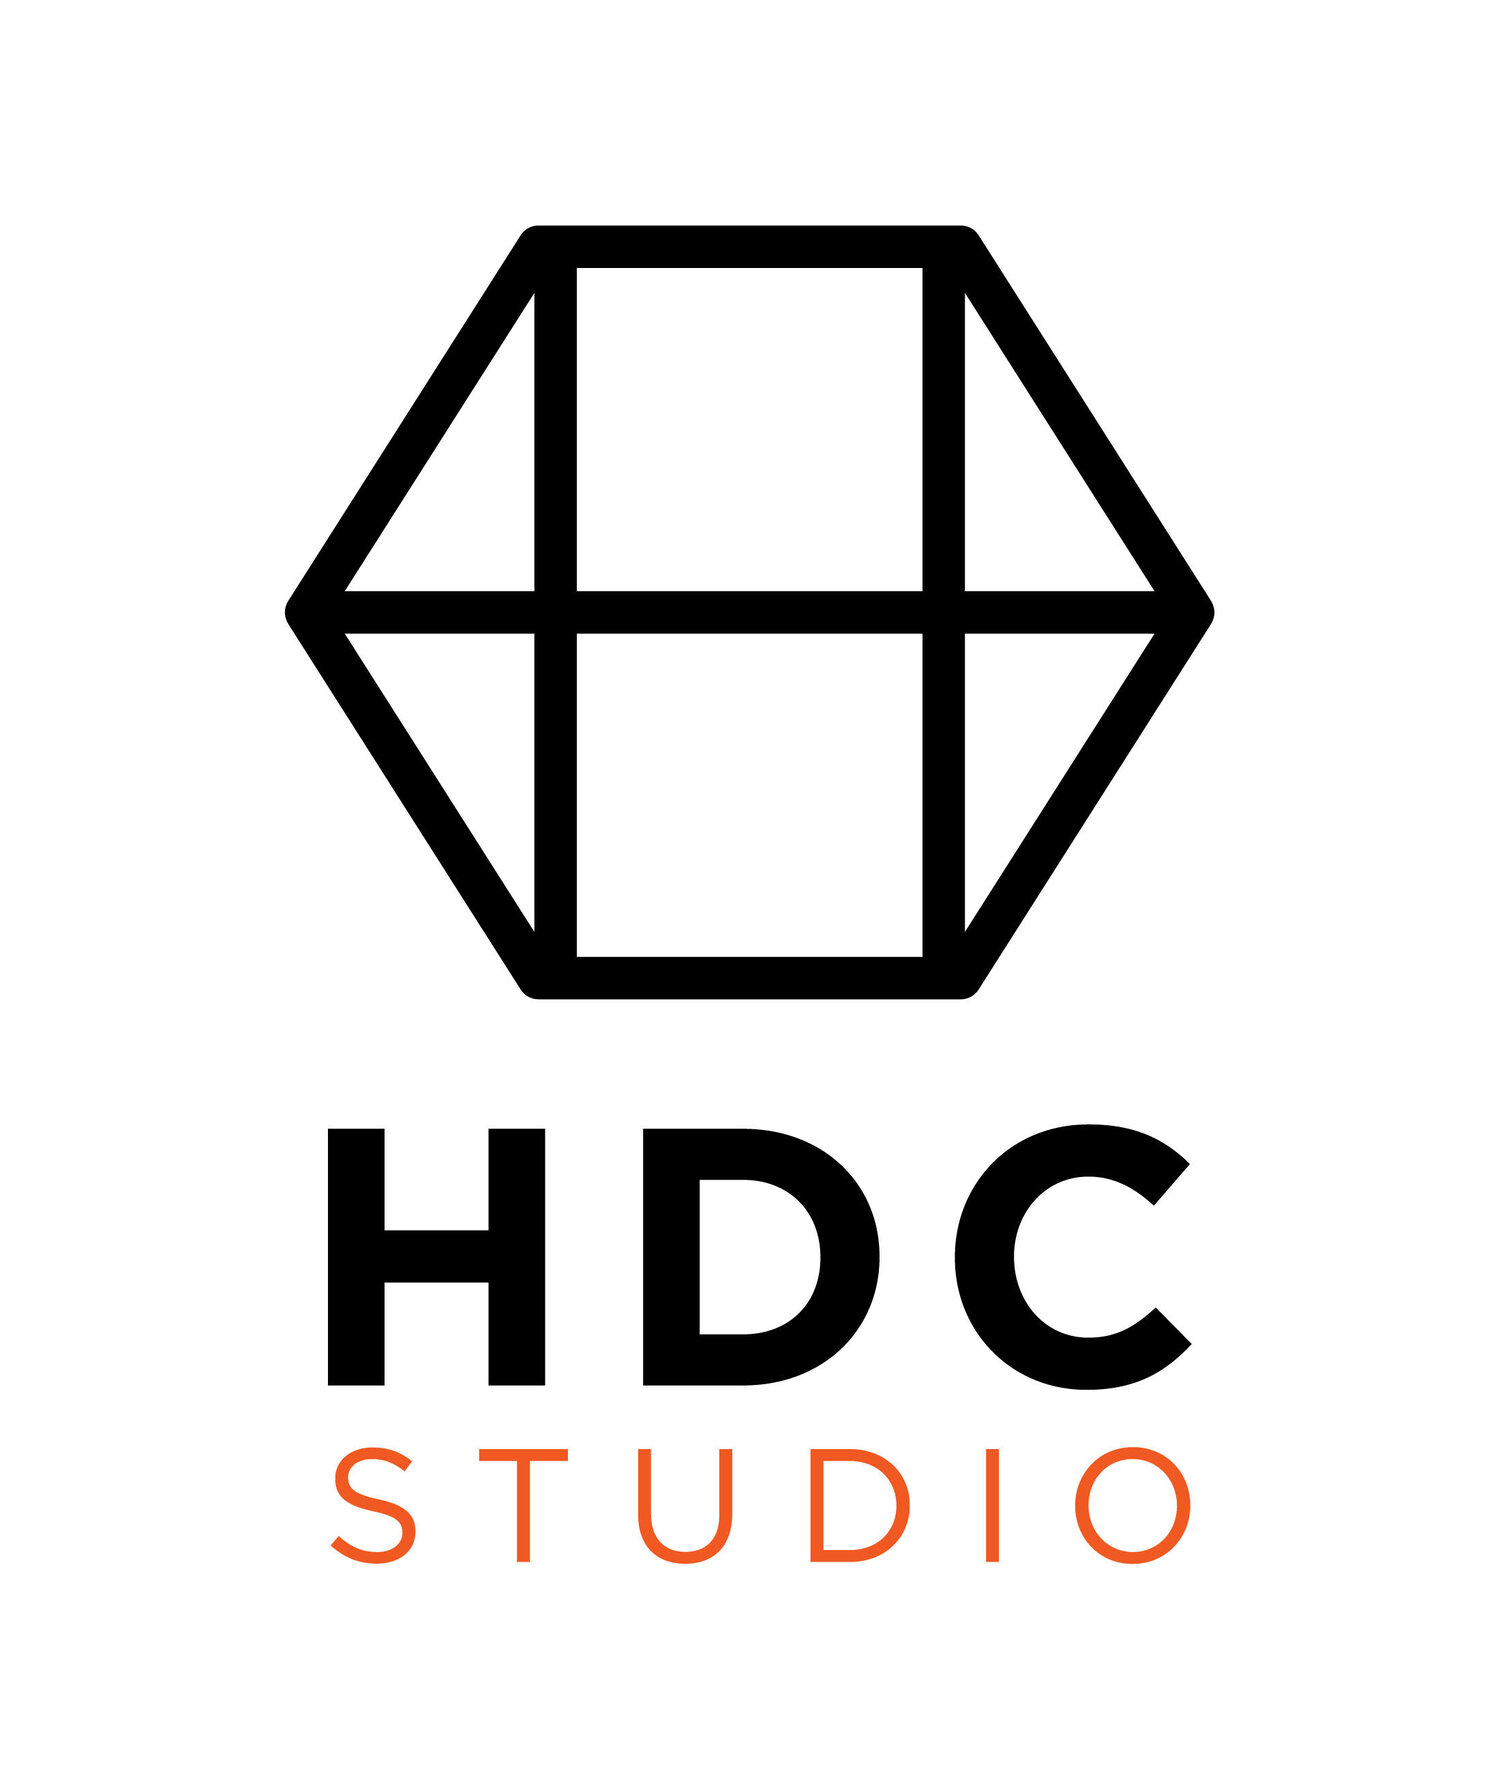  HDCstudio